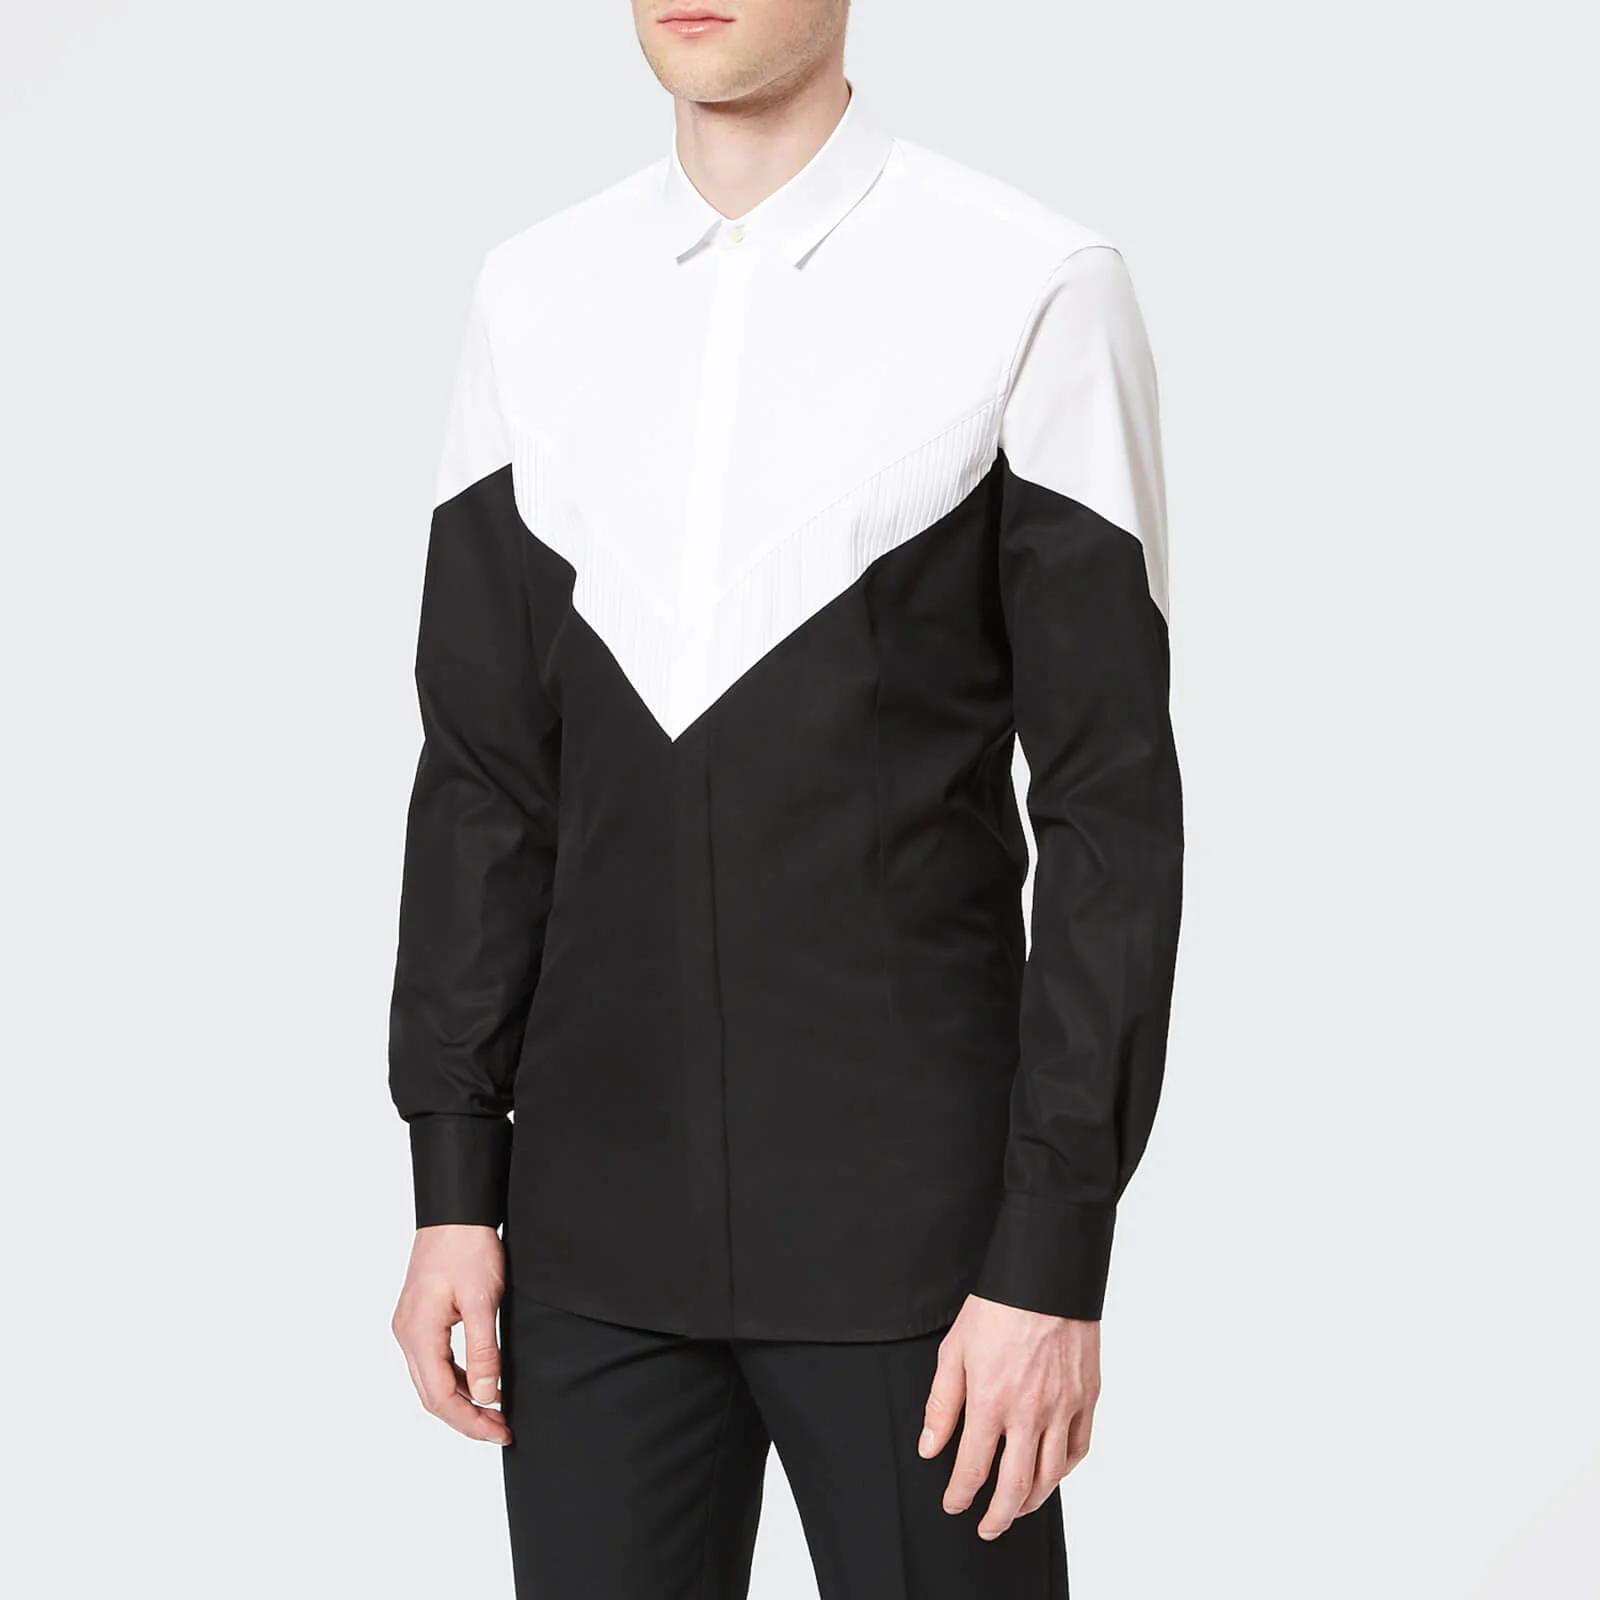 Neil Barrett Men's Tuxedo Modernist Shirt - Black/White Image 1